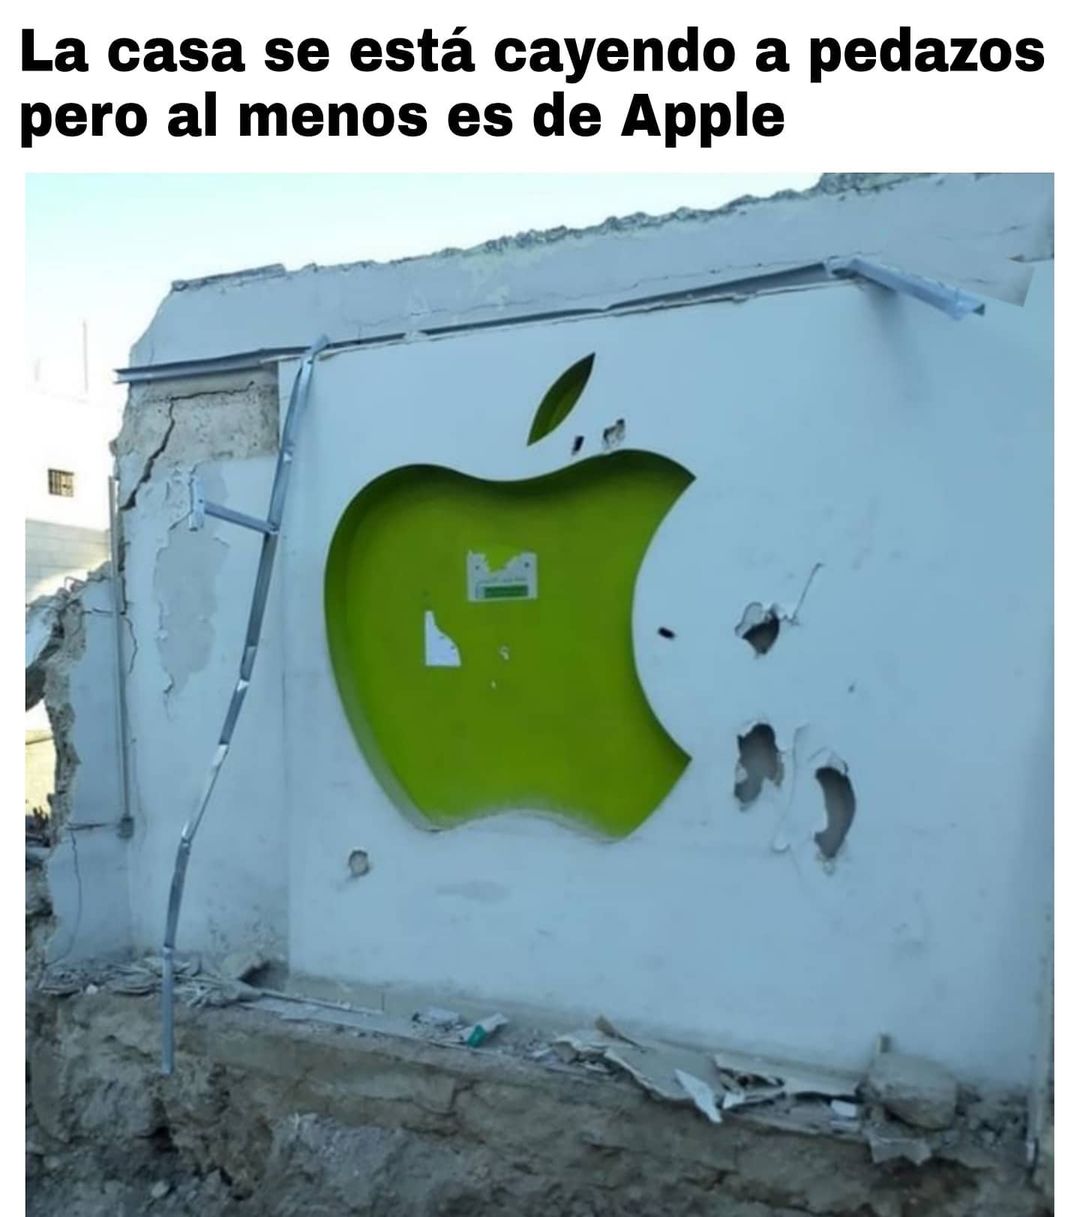 La casa se está cayendo a pedazos pero al menos es de Apple.